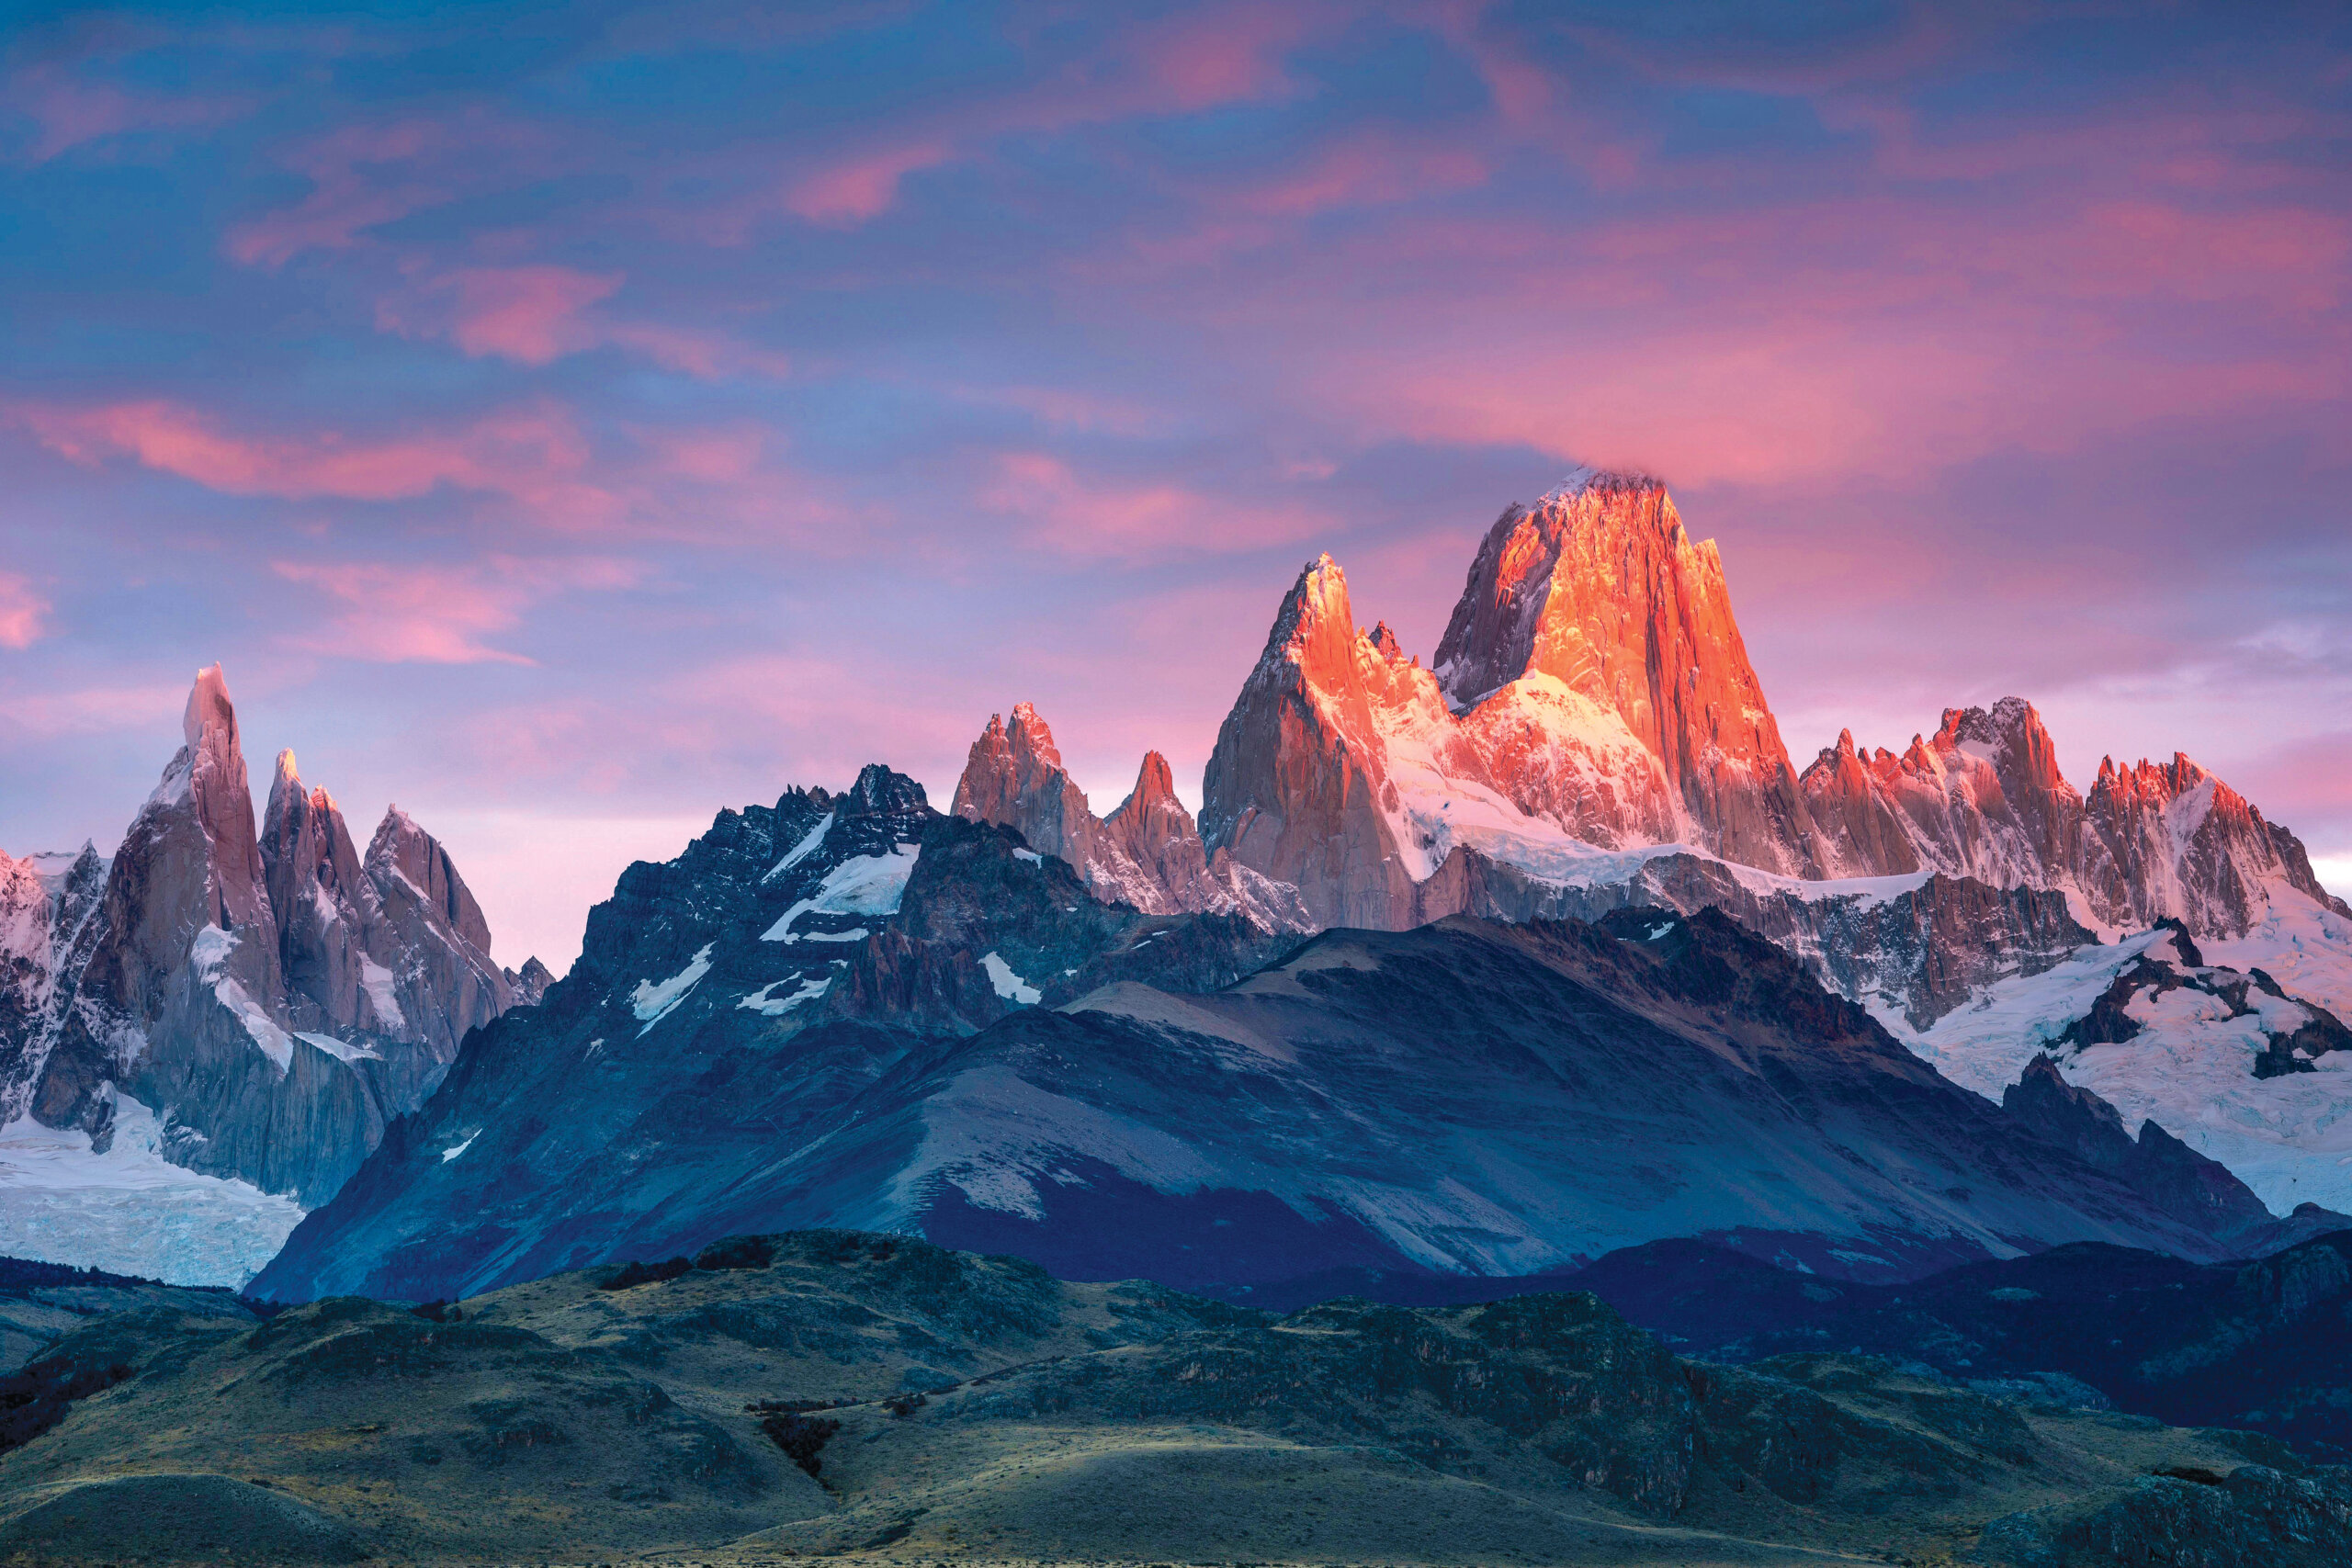 Patagonia Hiking Tours | Best Trips to Patagonia